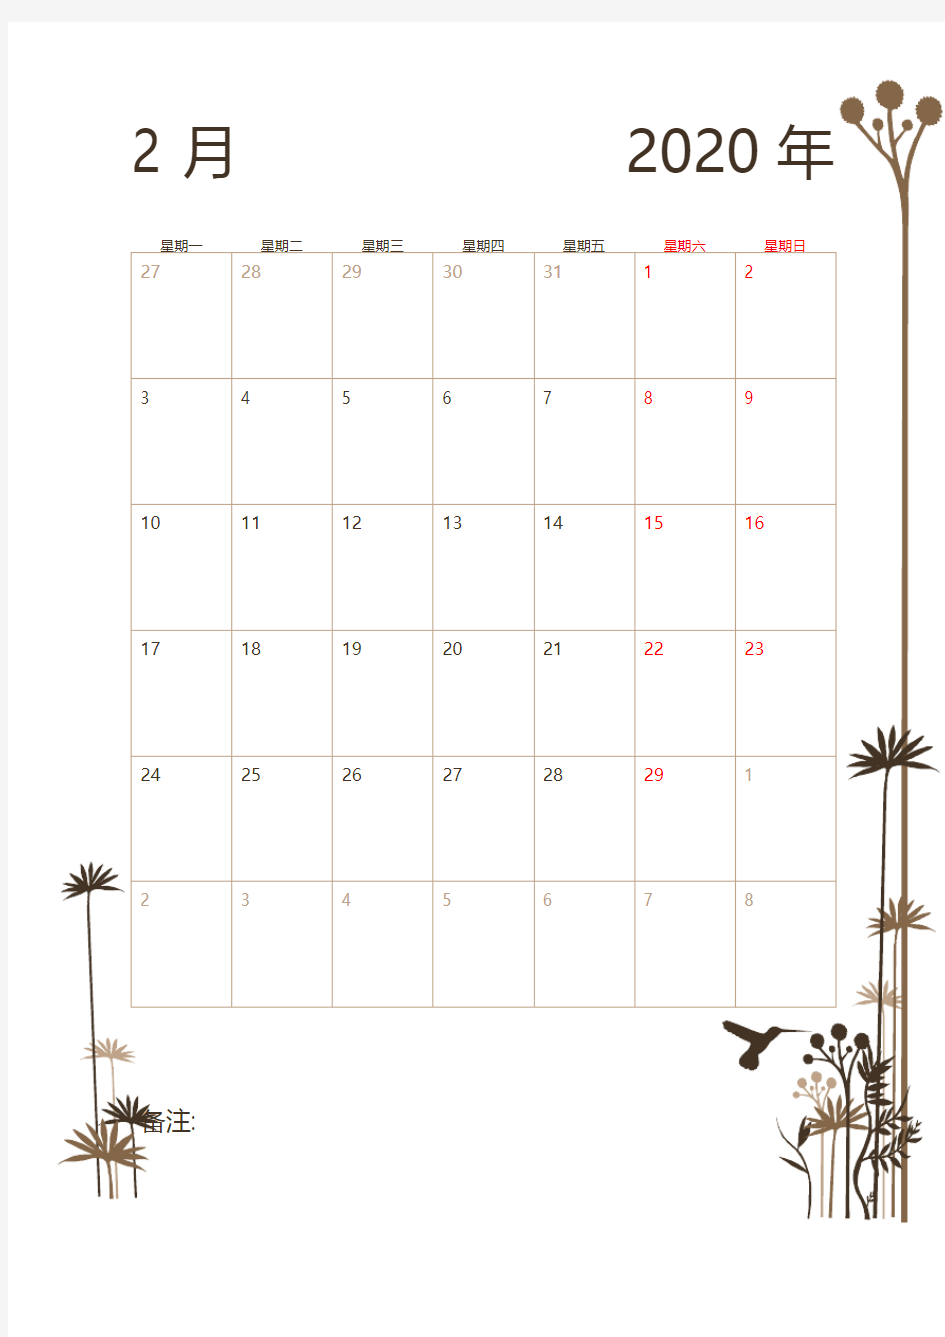 2020年行事历表(1月-12月 全)建议打印使用